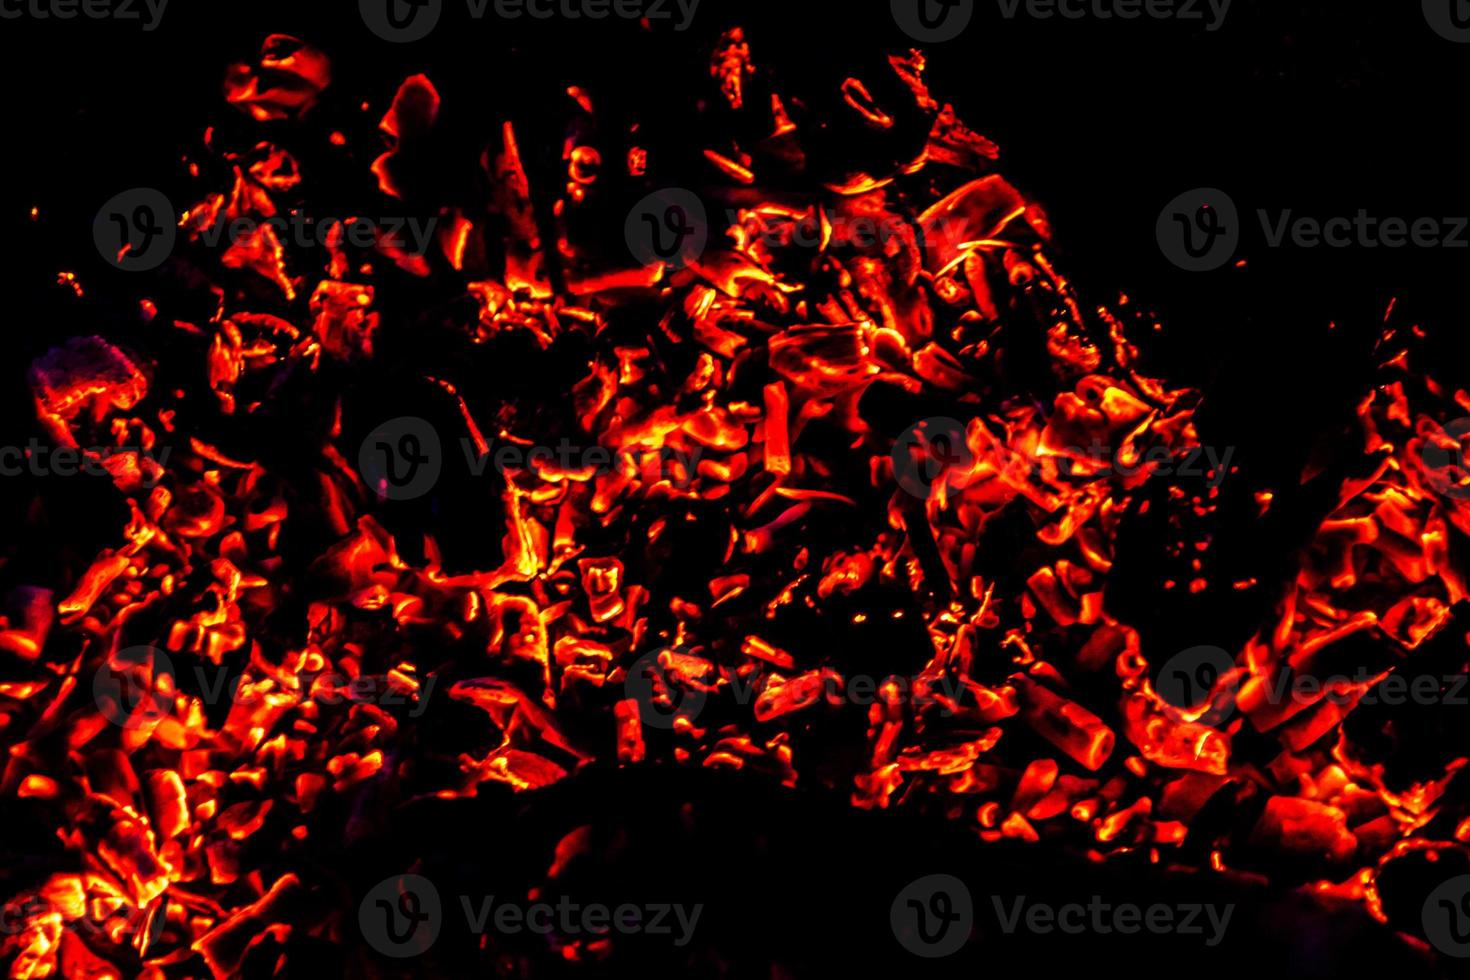 textura de llama de fuego. telón de fondo material en llamas. patrón de efecto de quemado. papel tapiz de fuego y antorcha. telón de fondo de calor y neblina. foto